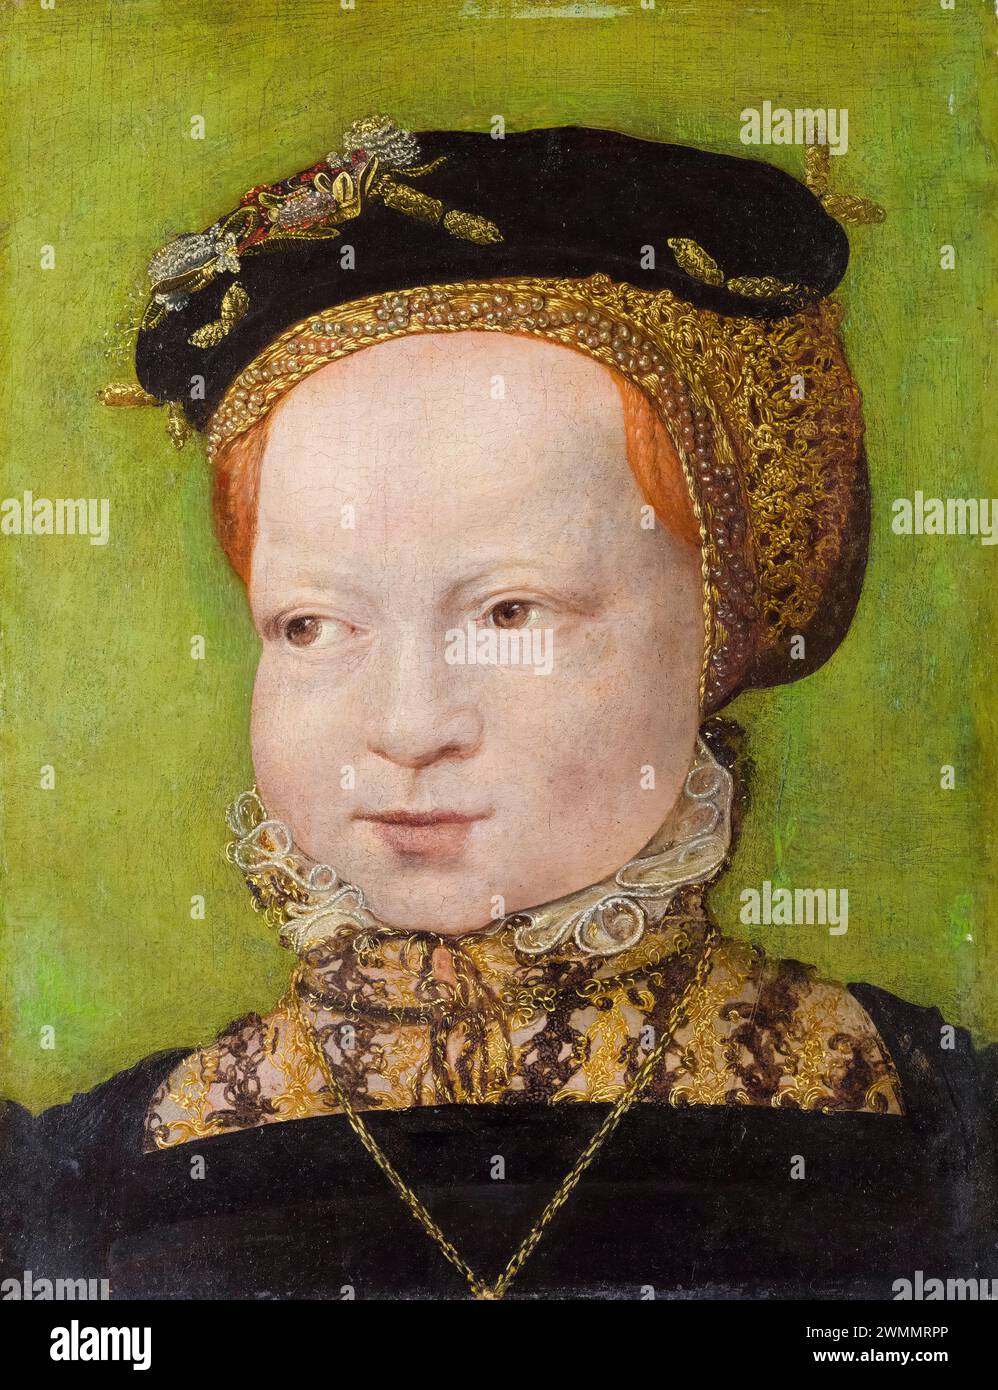 Jakob Seisenegger, Portrait d'une fille, peinture à l'huile sur bois, 1545-1550 Banque D'Images